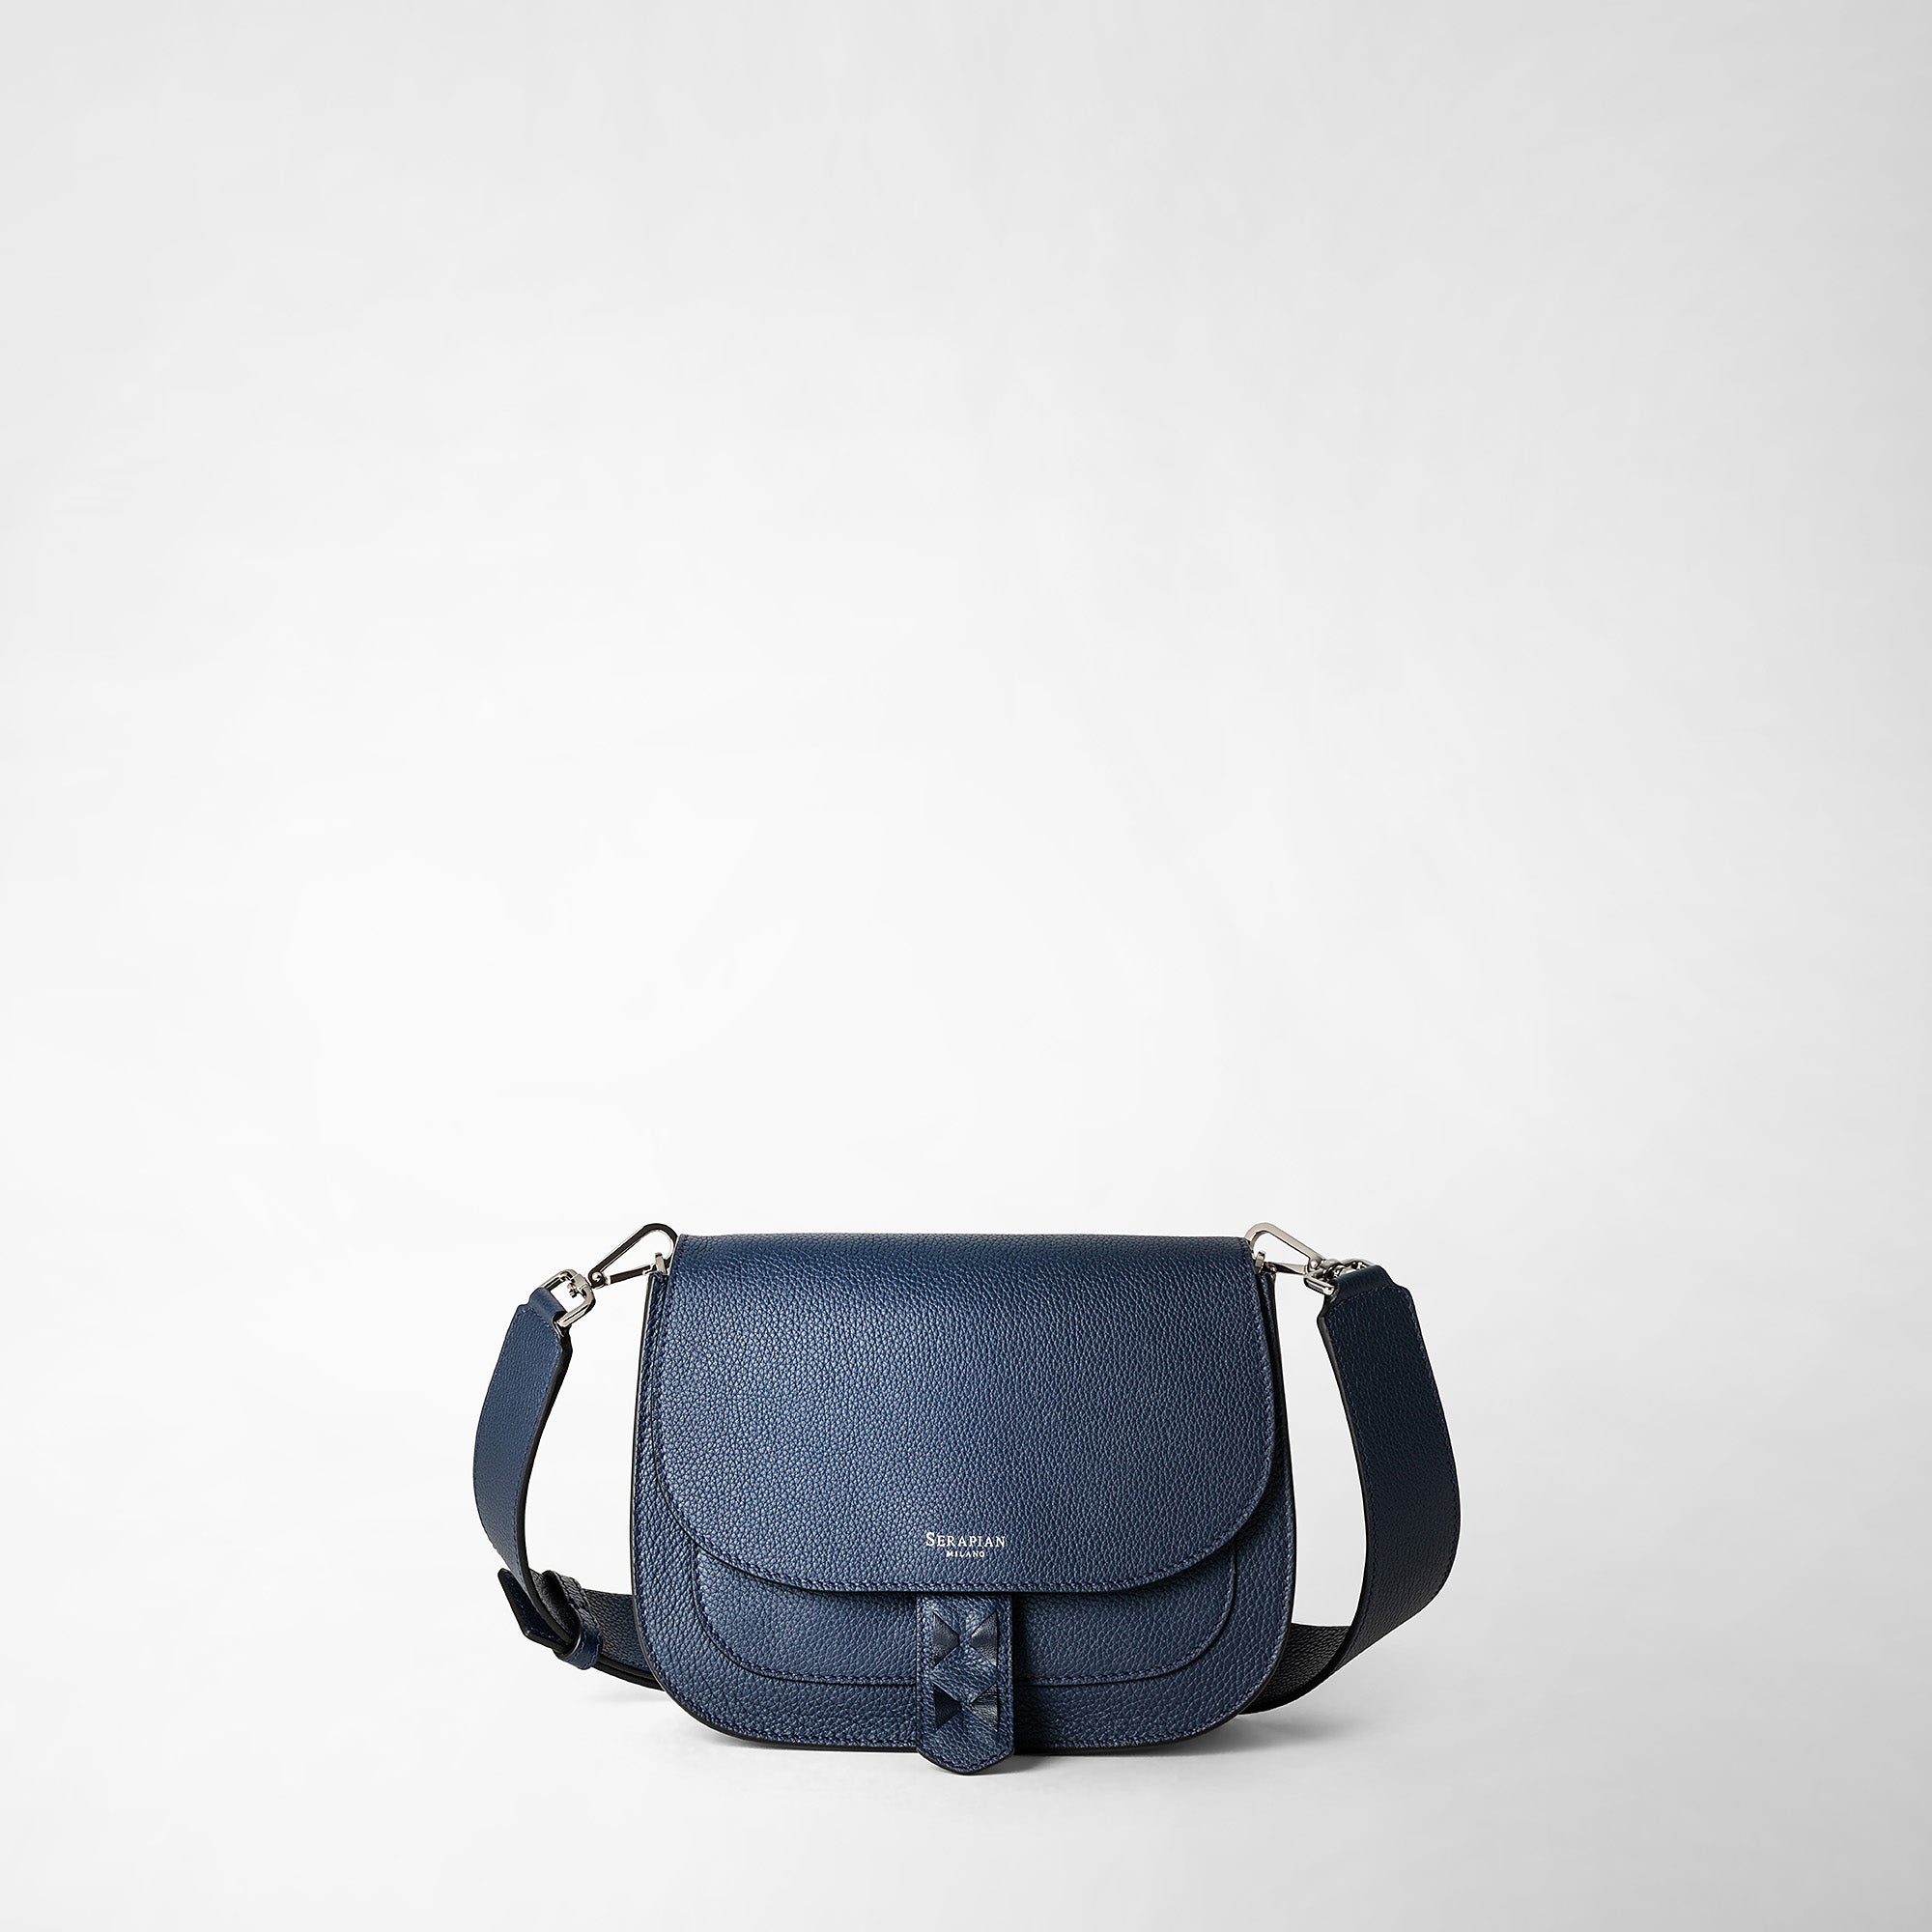 Serapian Luna Crossbody Bag in Rugiada Leather, Woman, Navy Blue